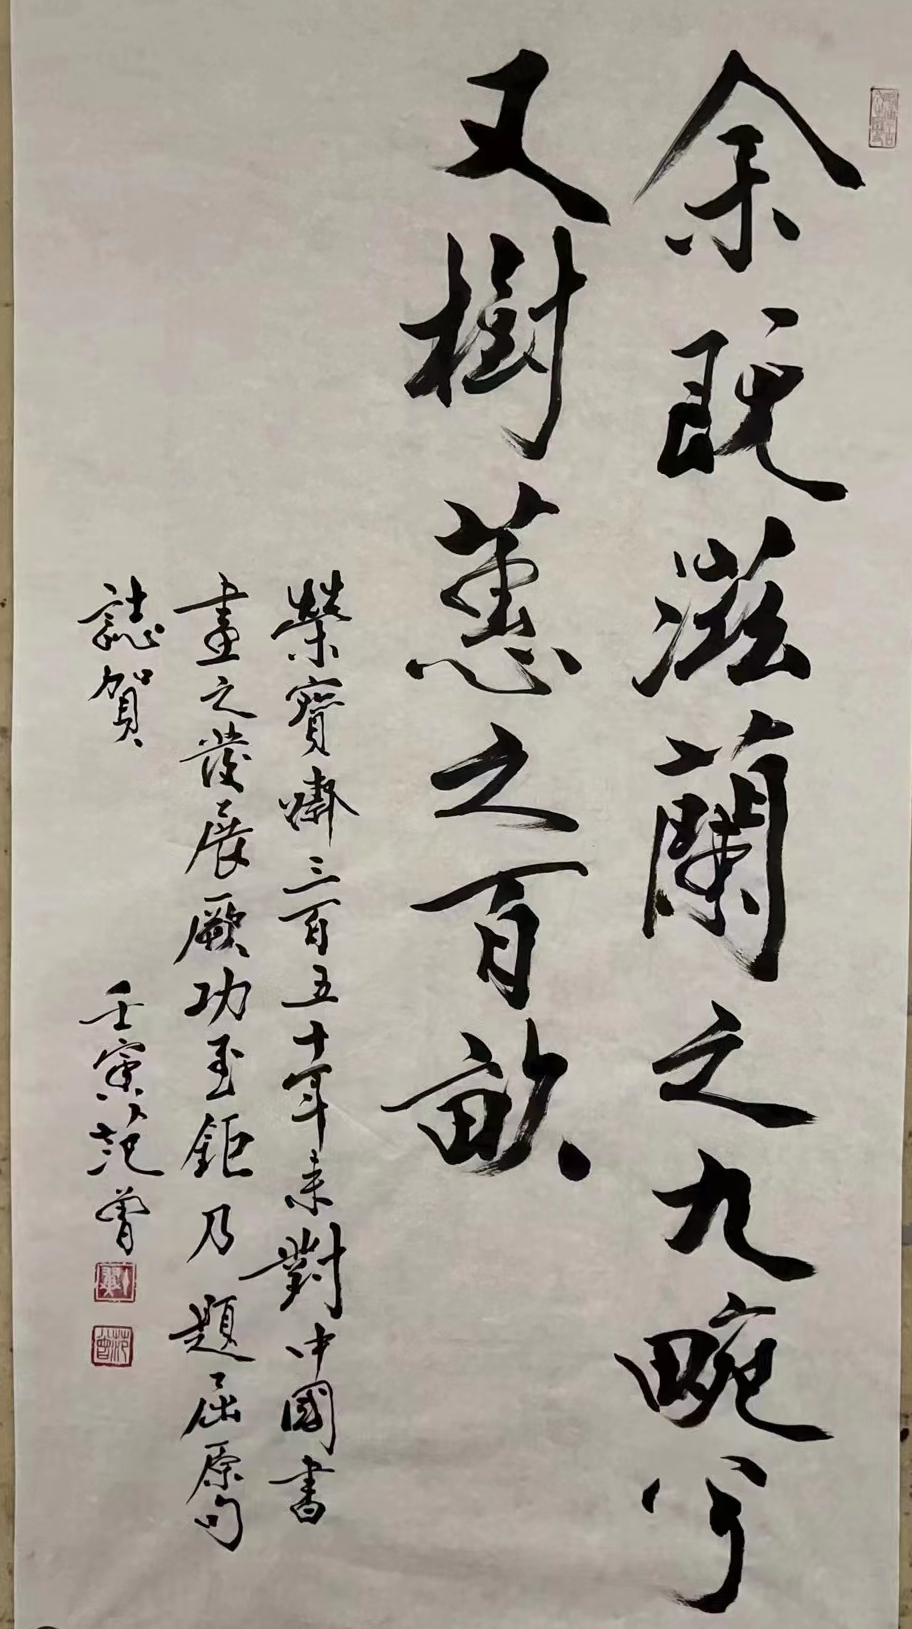 范曾先生为荣宝斋350周年创作书法作品